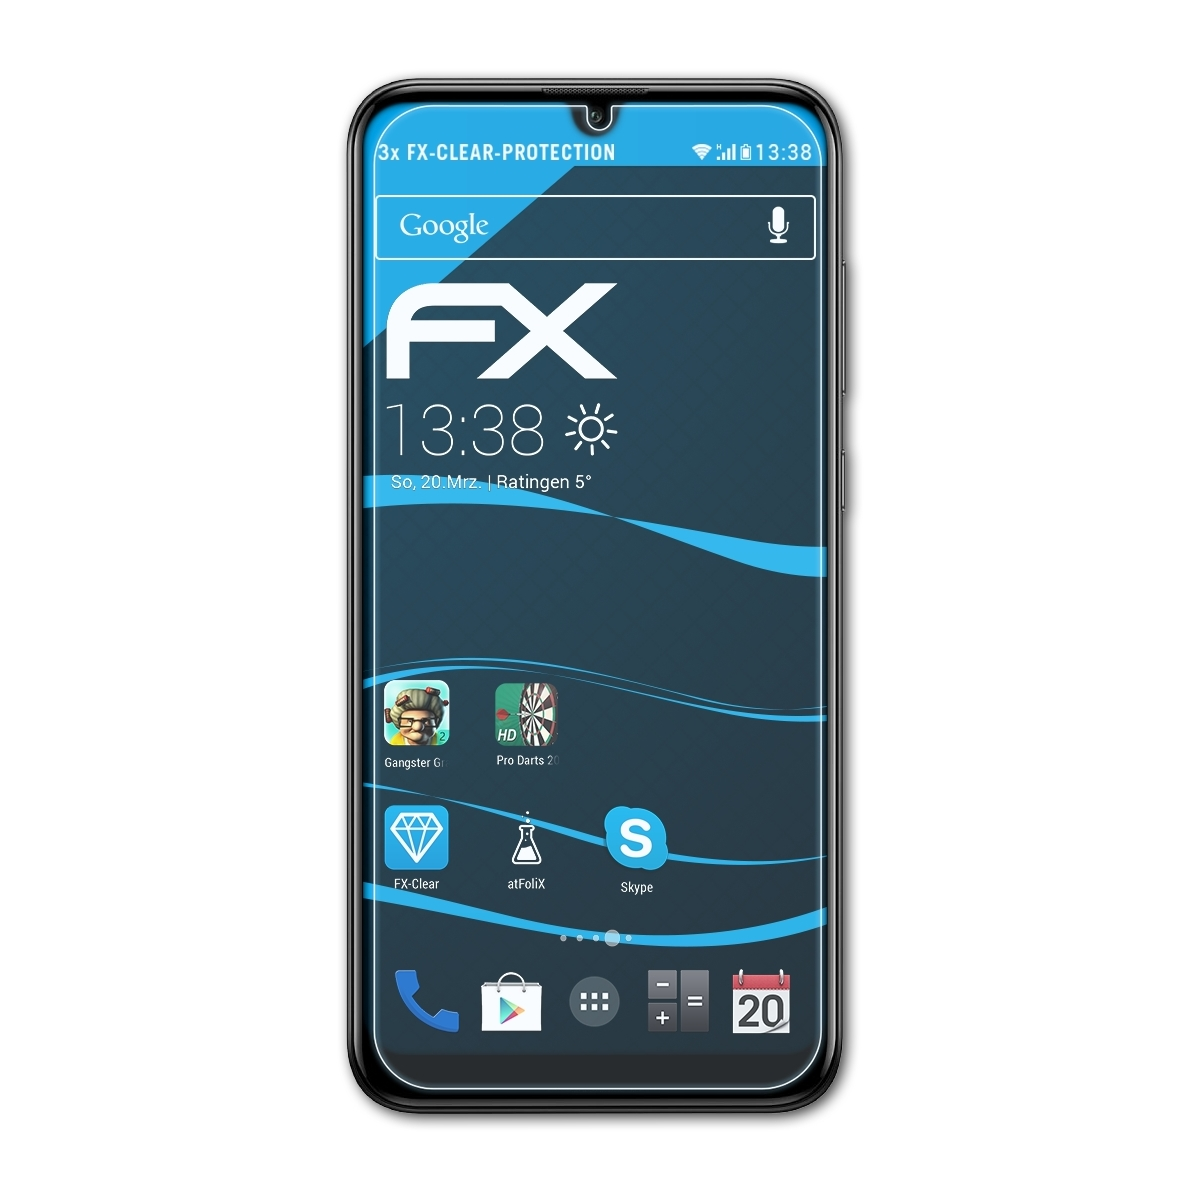 FX-Clear 2019) 3x ATFOLIX Huawei Y7 Displayschutz(für